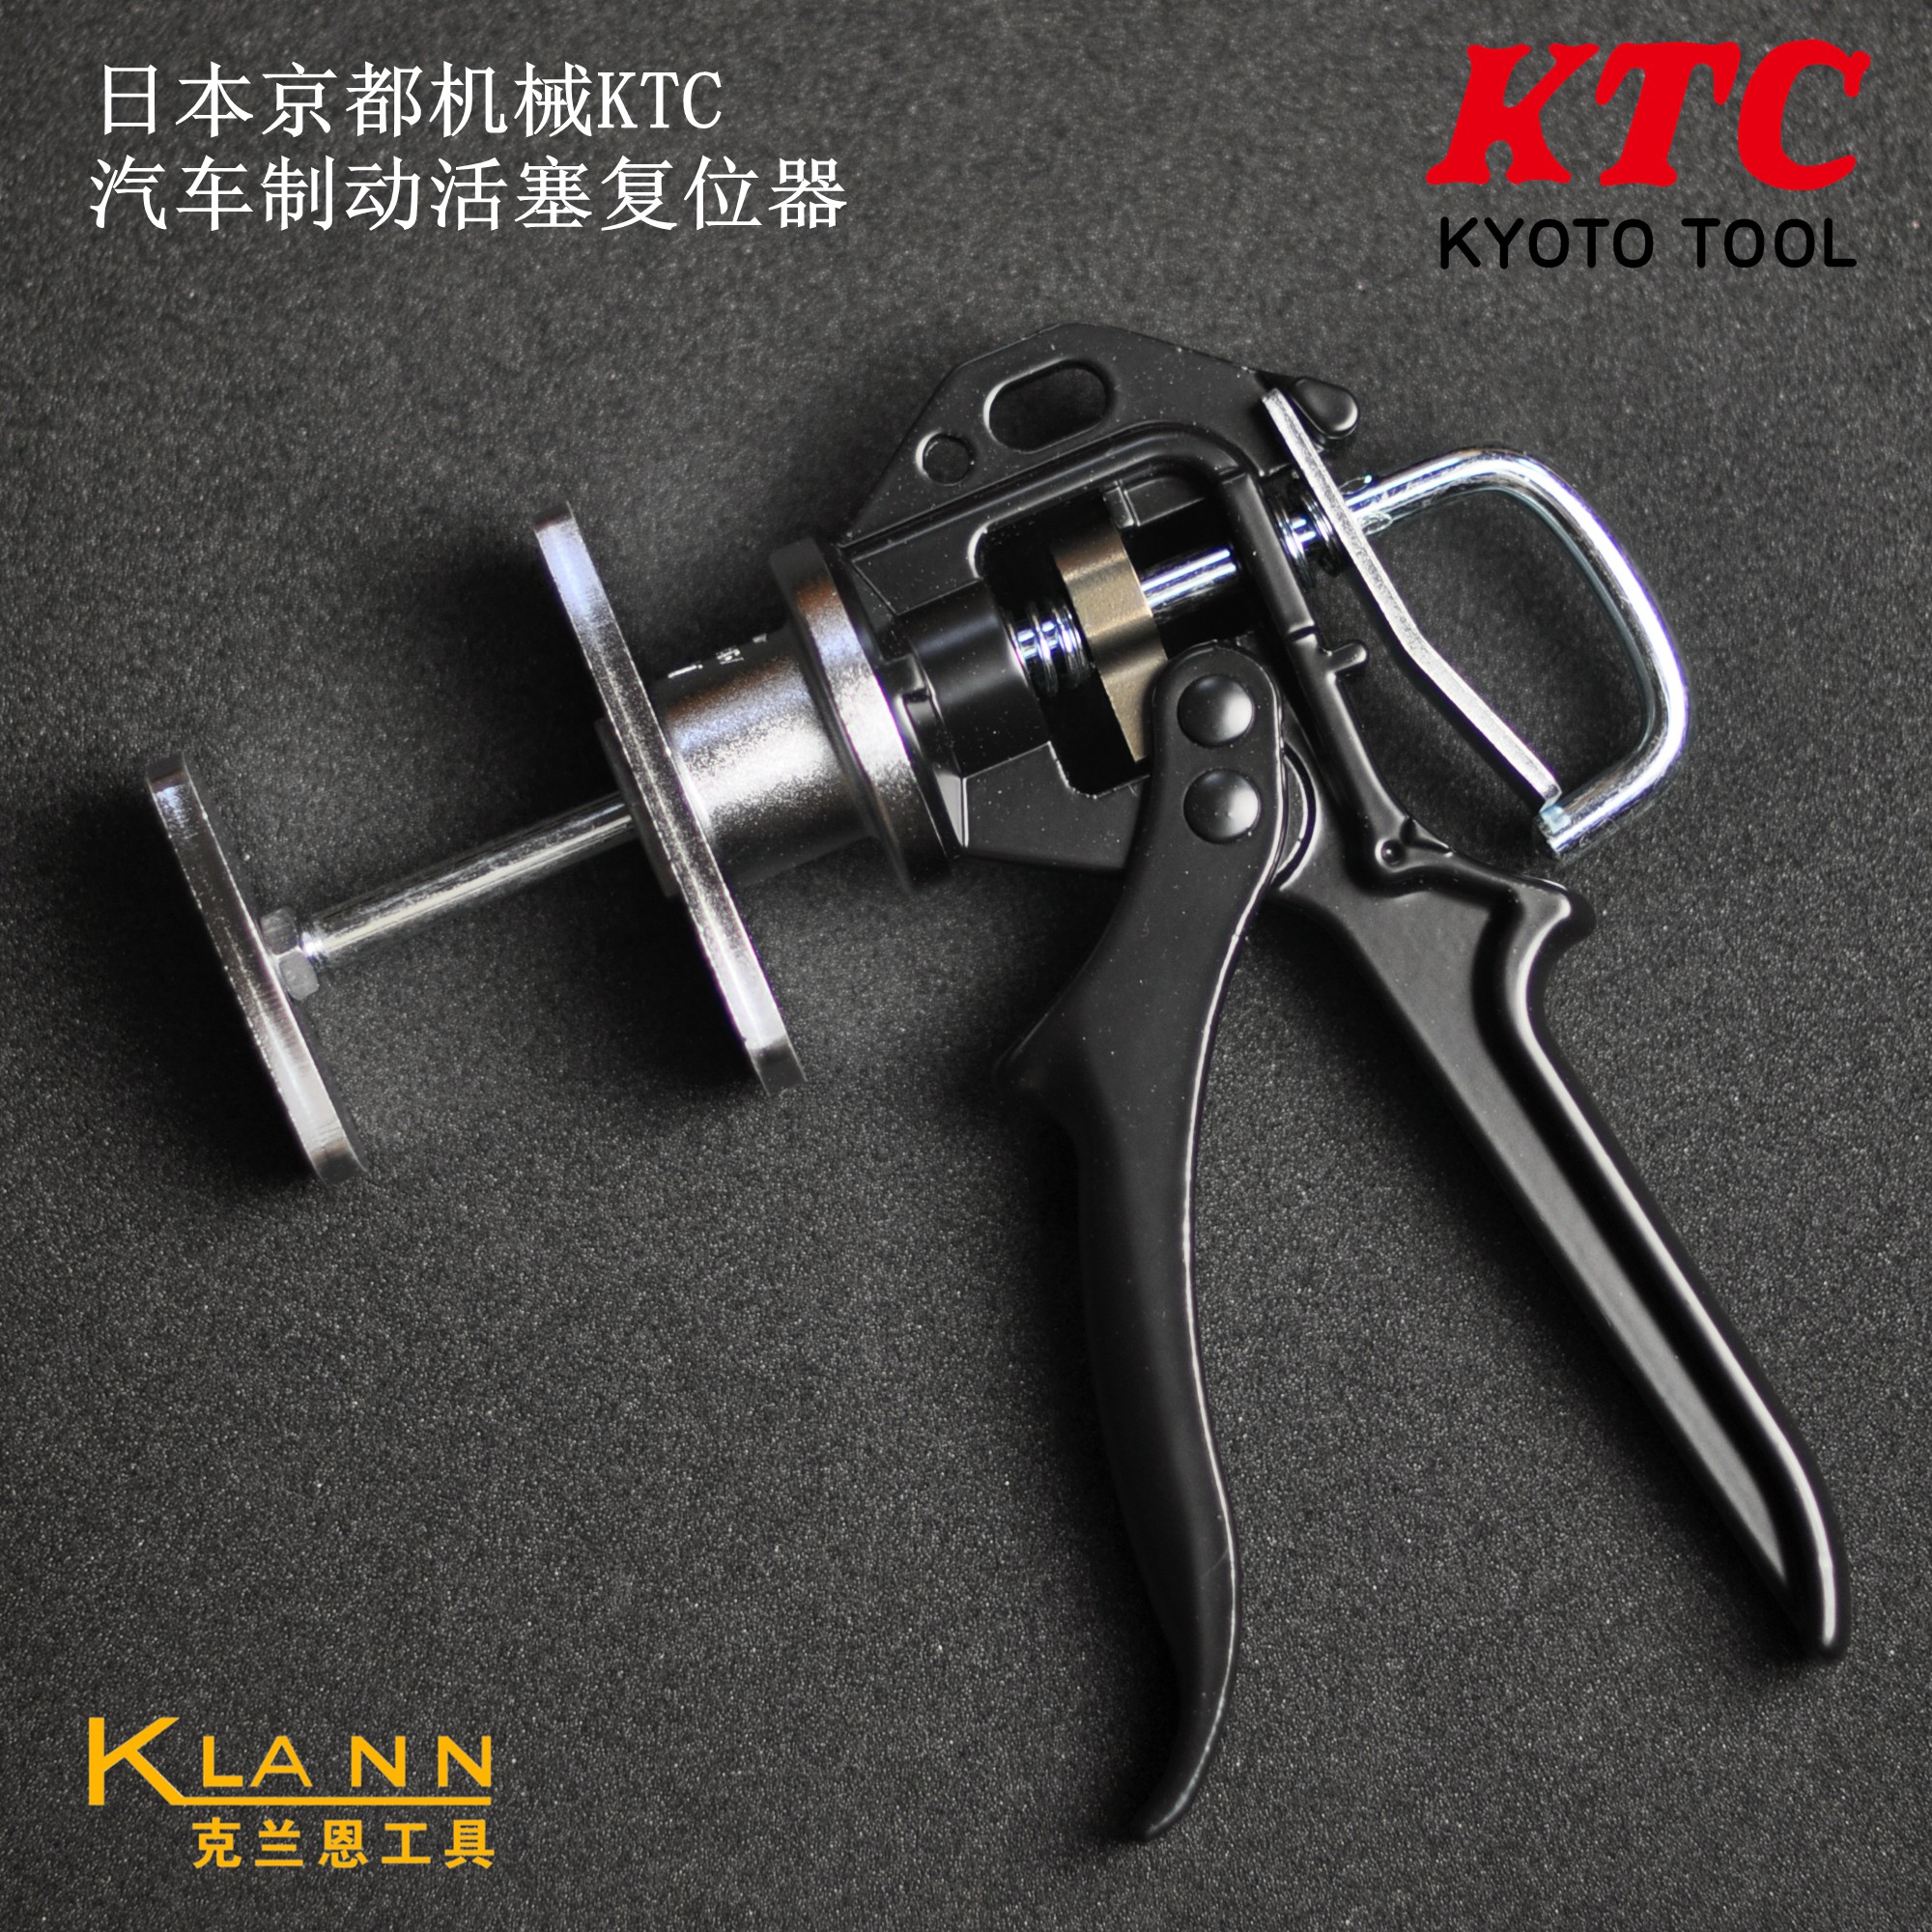 日本KTC 制动活塞复位器 京都机械汽车刹车系统专用工具